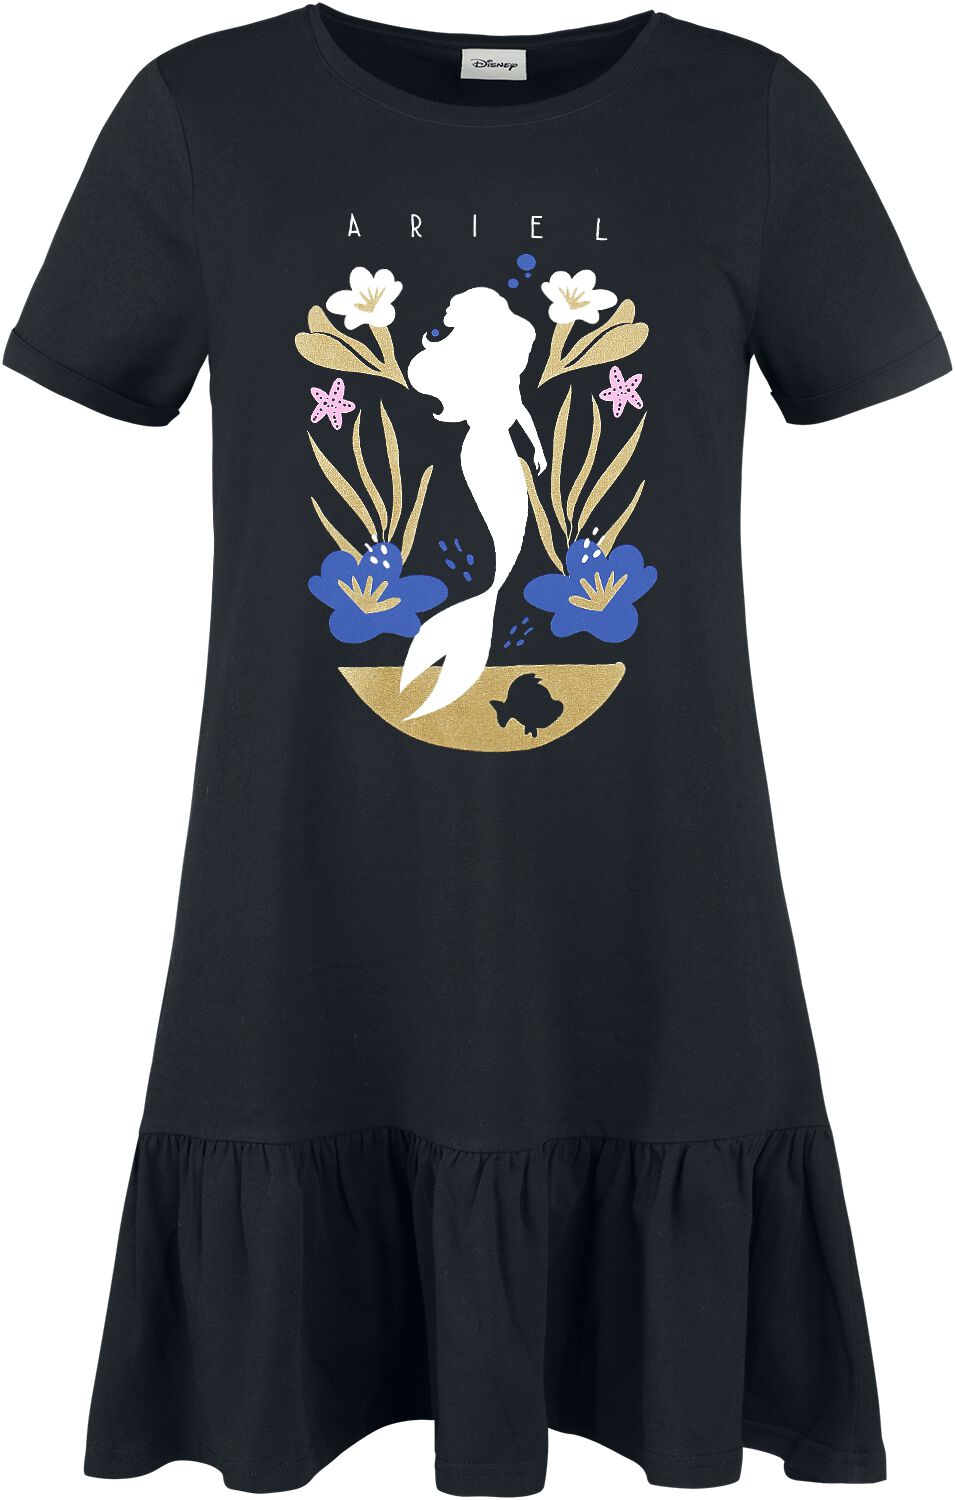 Arielle, die Meerjungfrau - Disney Kleid lang - Golden Age - S bis L - für Damen - Größe M - schwarz  - EMP exklusives Merchandise!